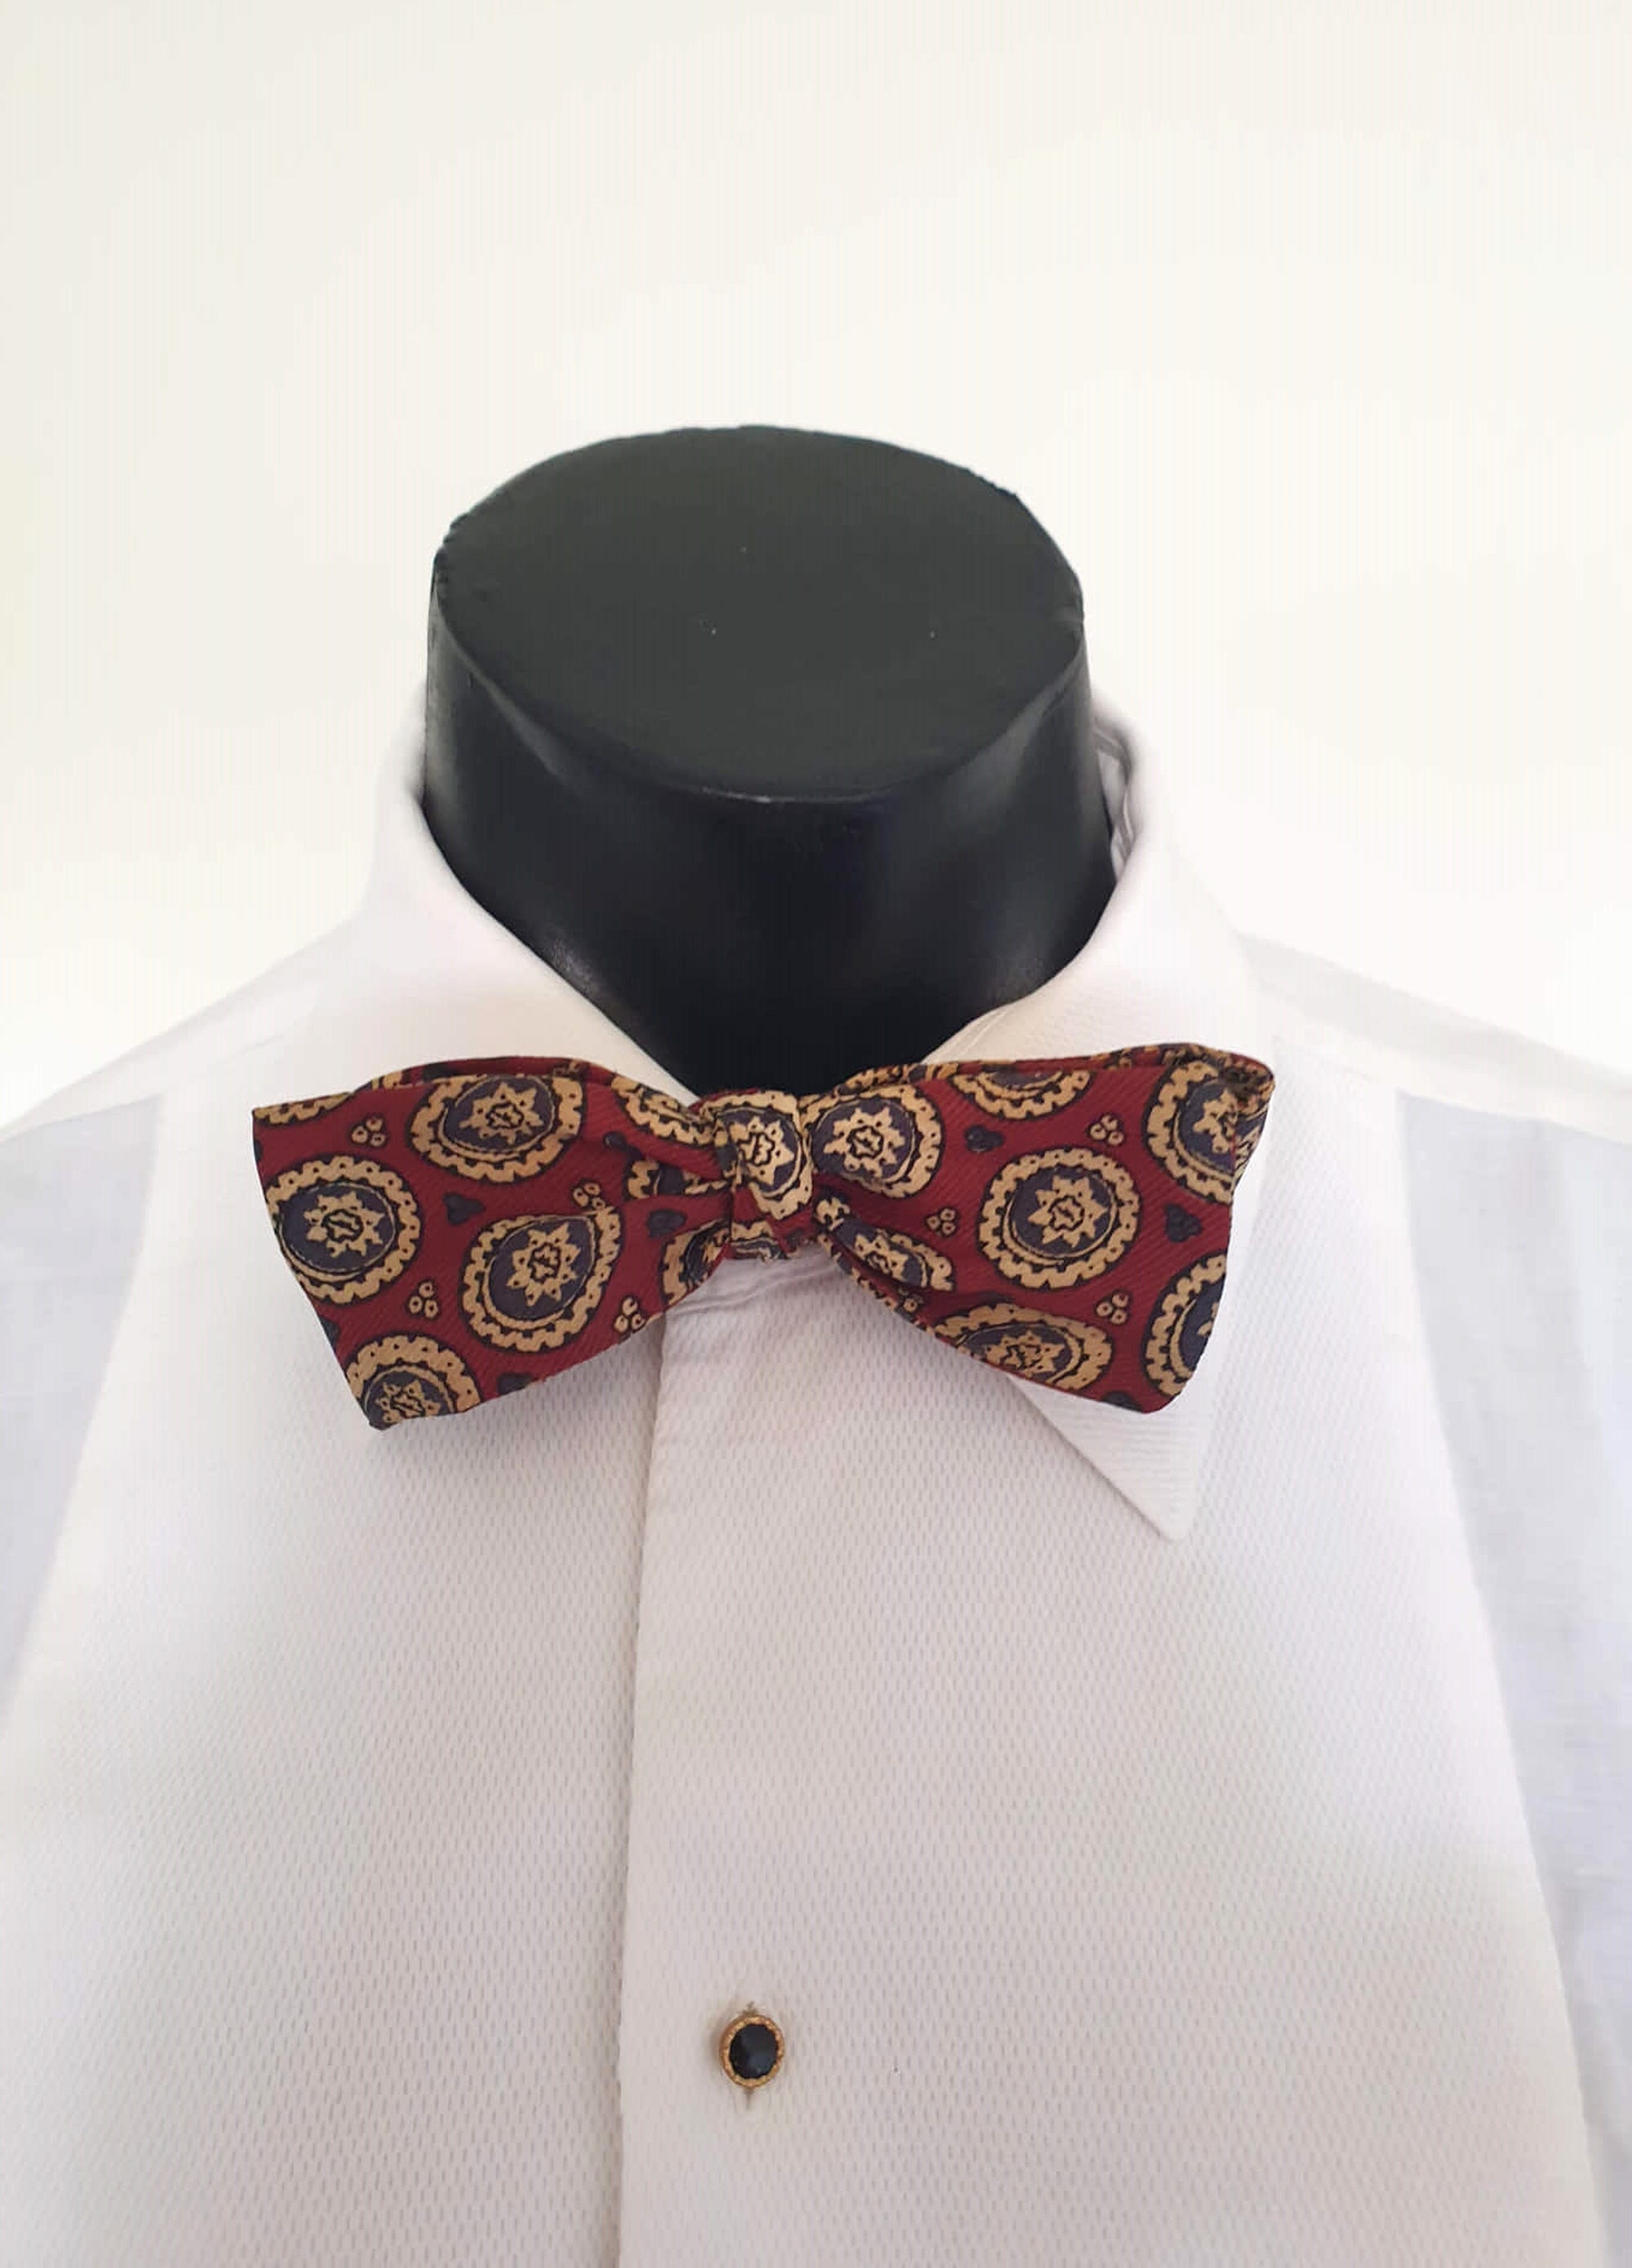 Vintage Maroon silk self tie bow tie by Holeproof